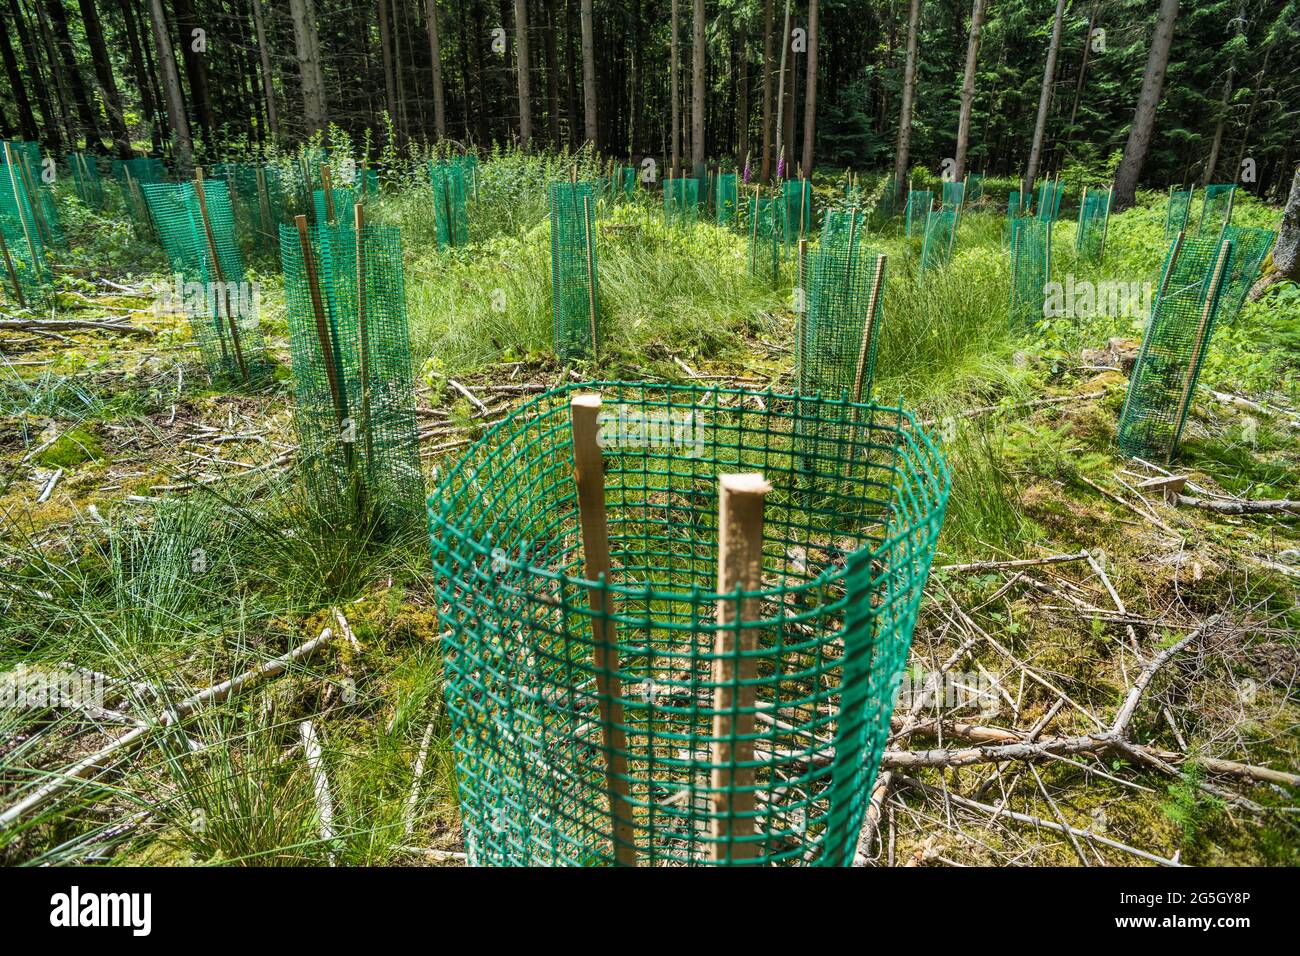 El plástico en el bosque como usado para proteger y apoyar los árboles recién plantados puede convertirse en un problema. Puede descomponerse y penetrar en el suelo. Contaminación Foto de stock